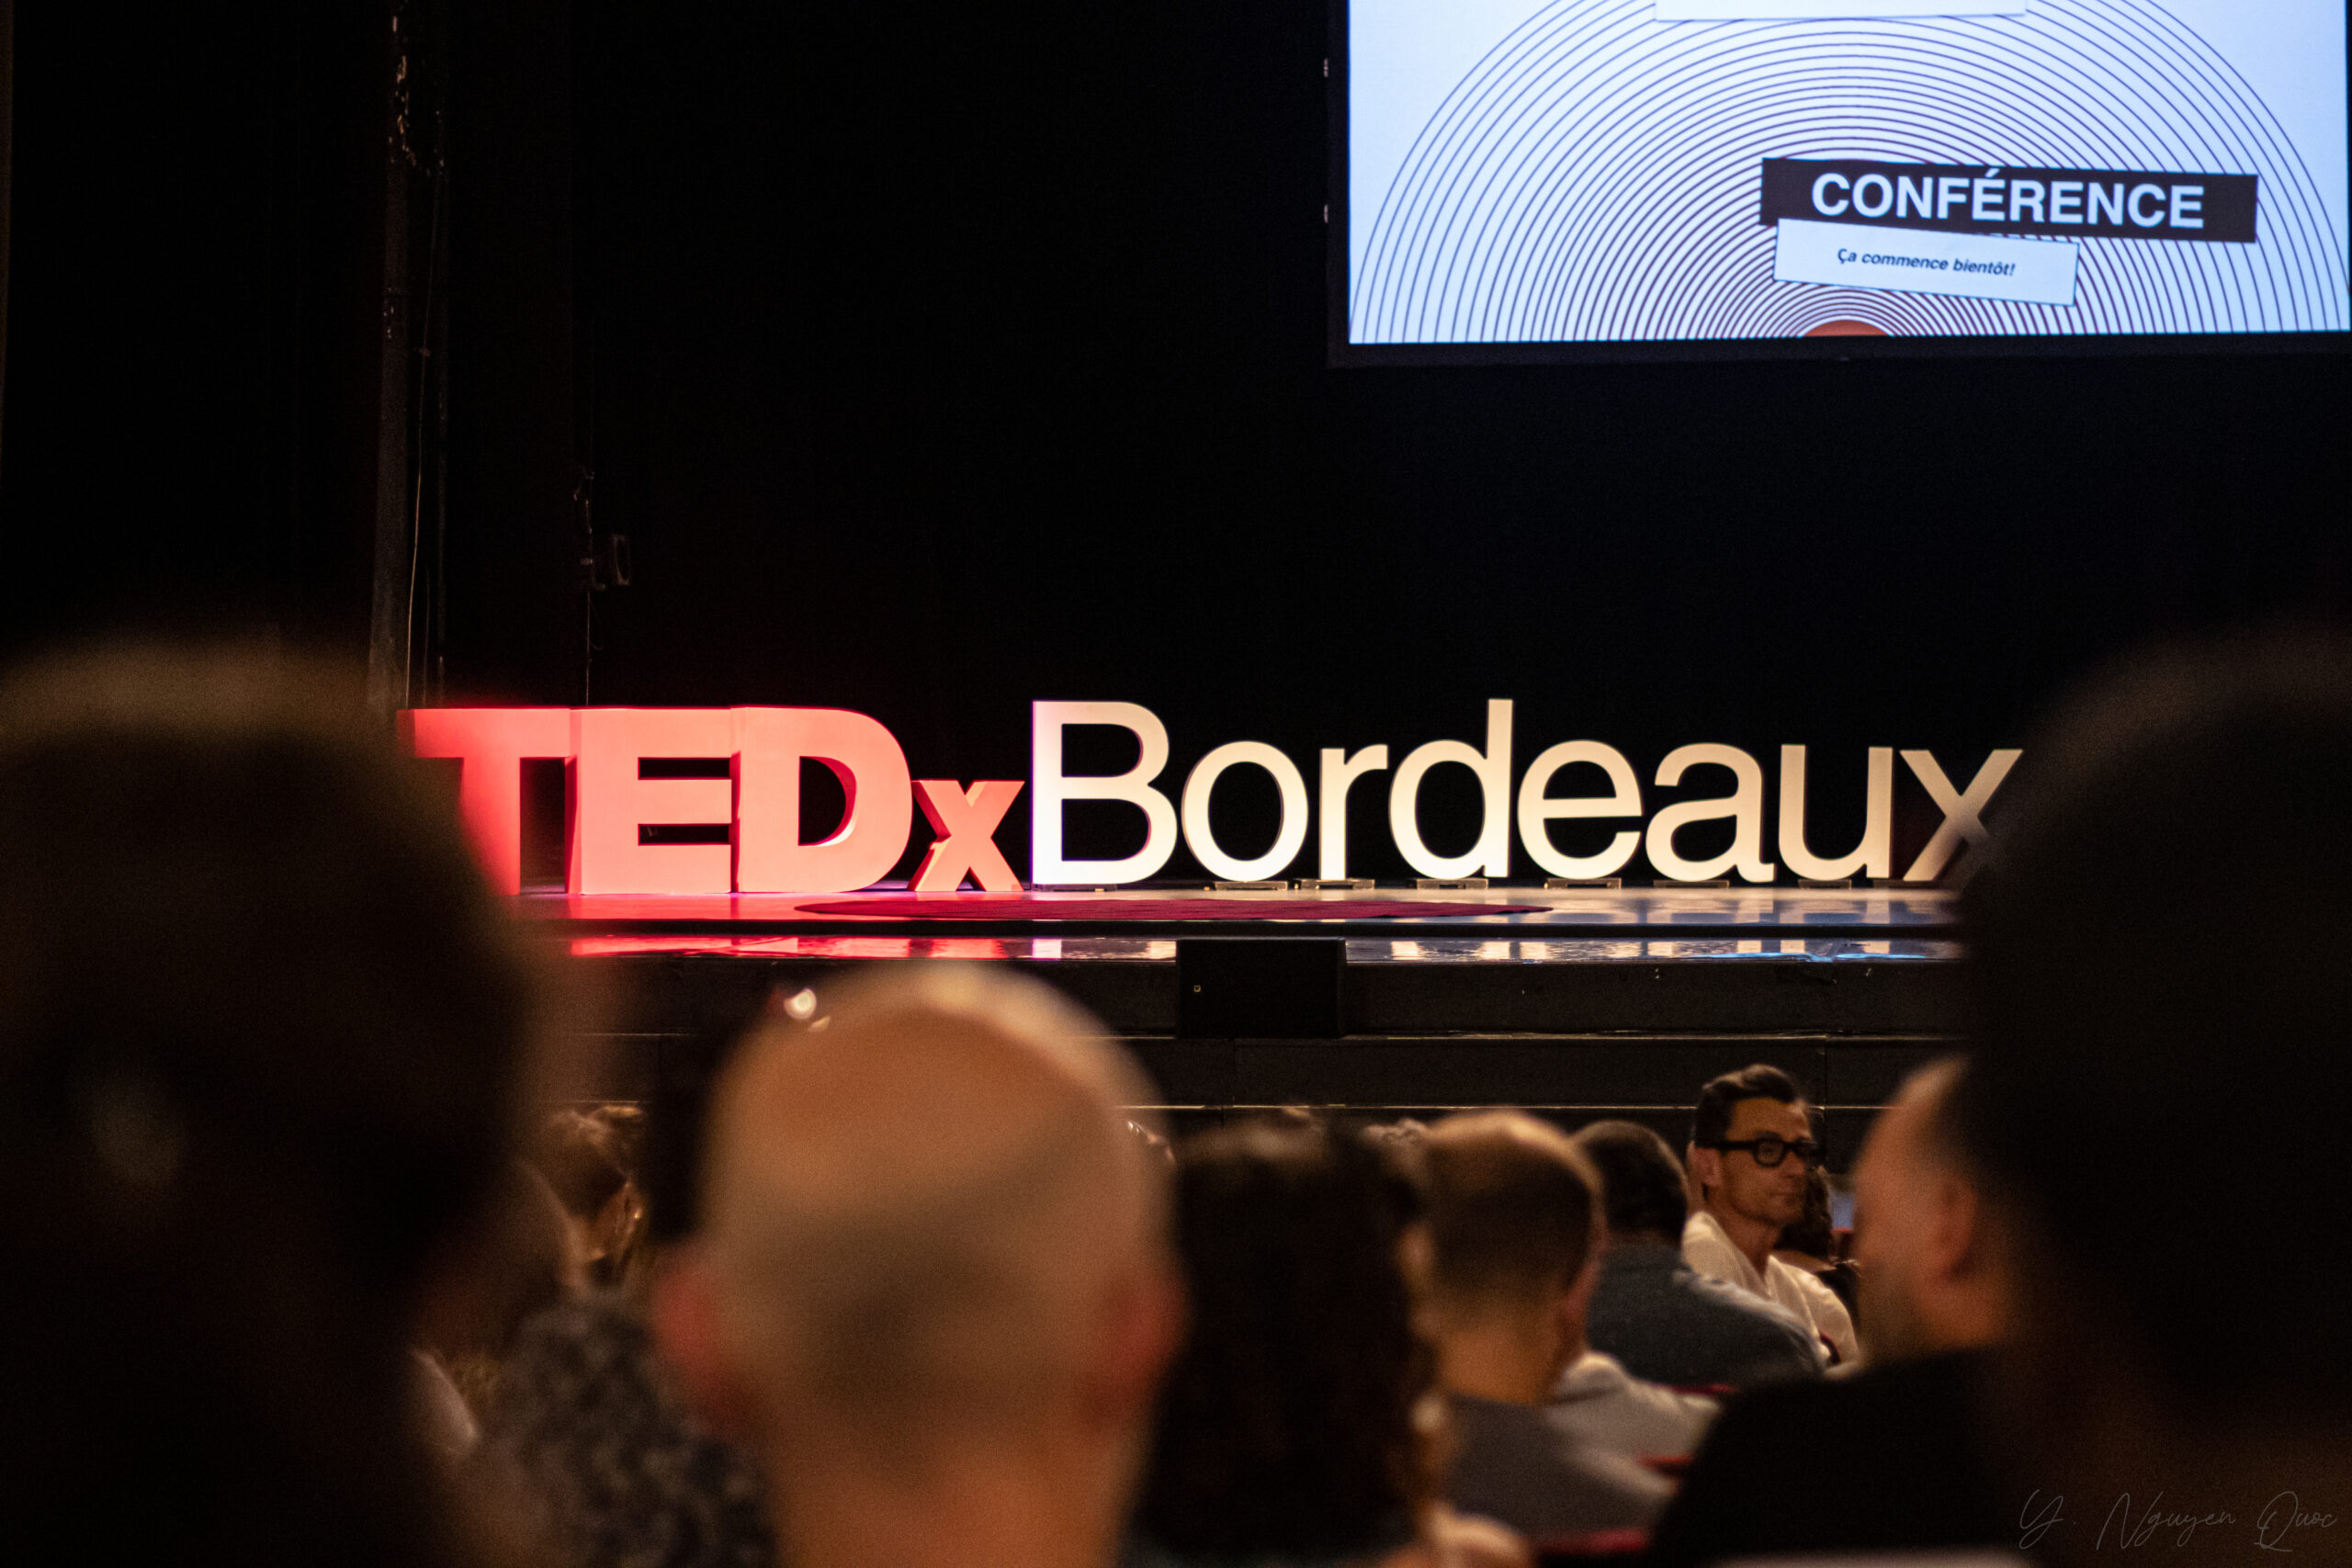 TEDxBORDEAUX